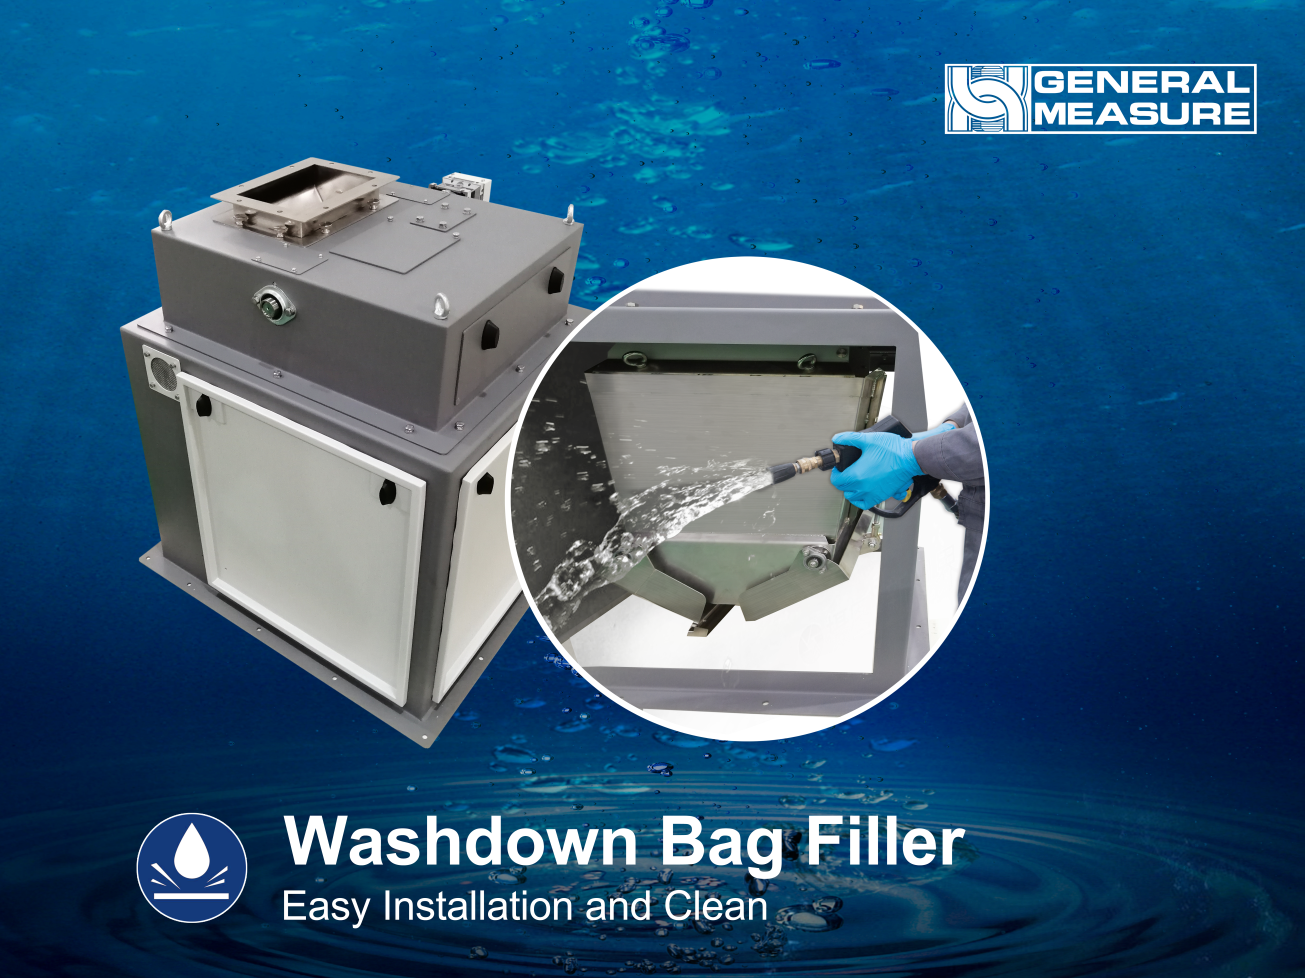 GM Washdown Bag Filler for Harsh Environment